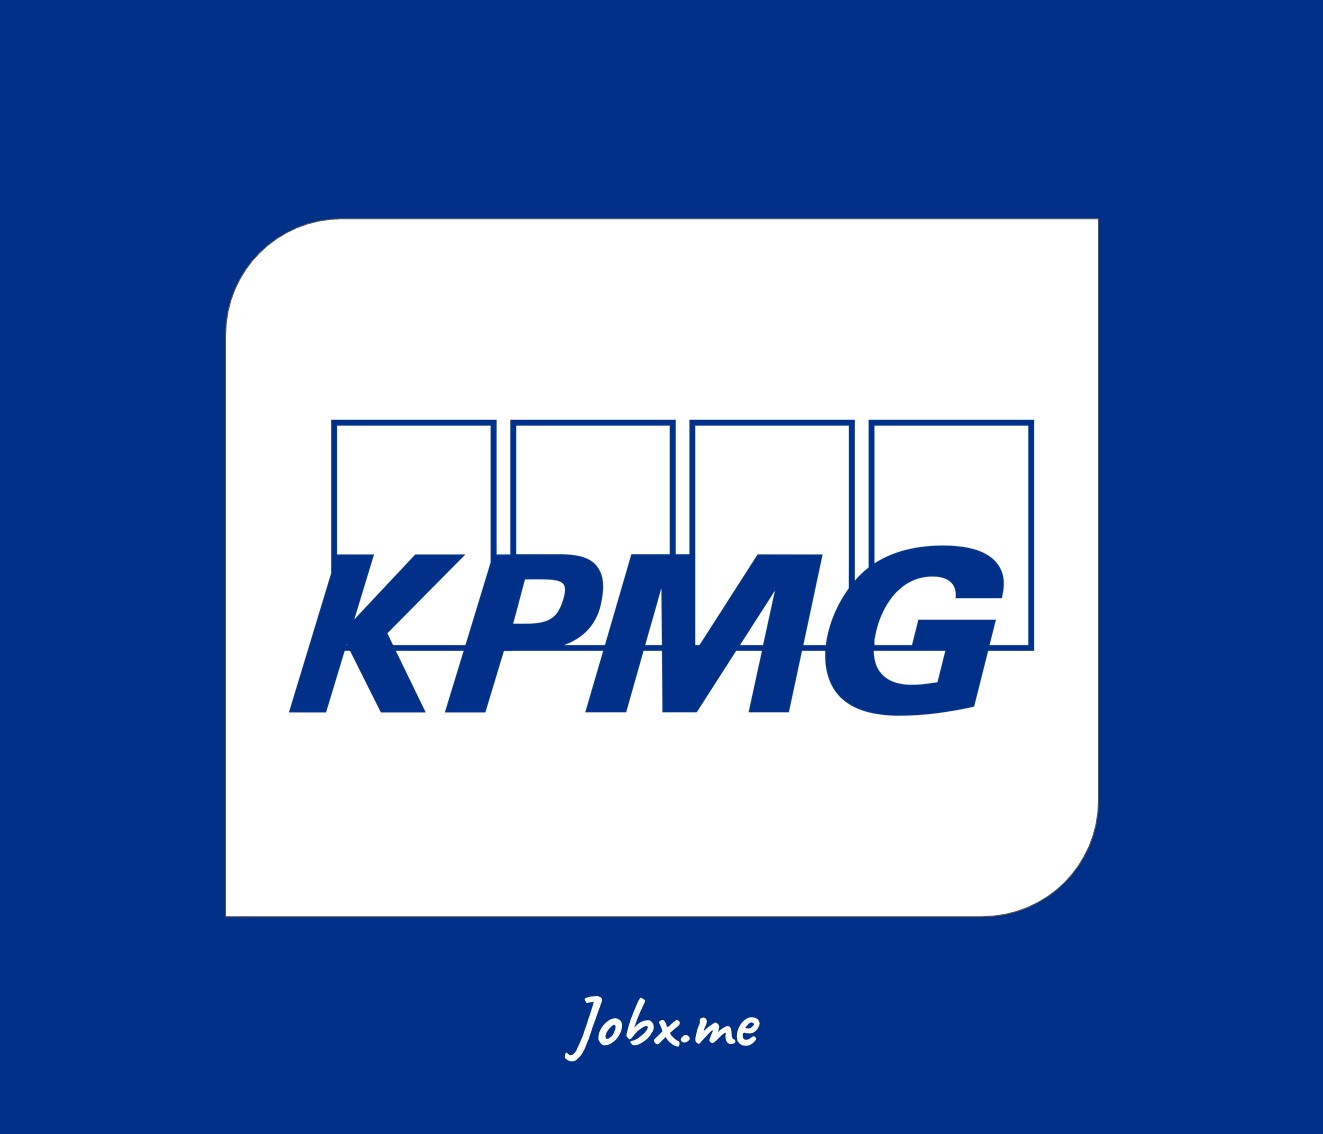 KPMG Jobs